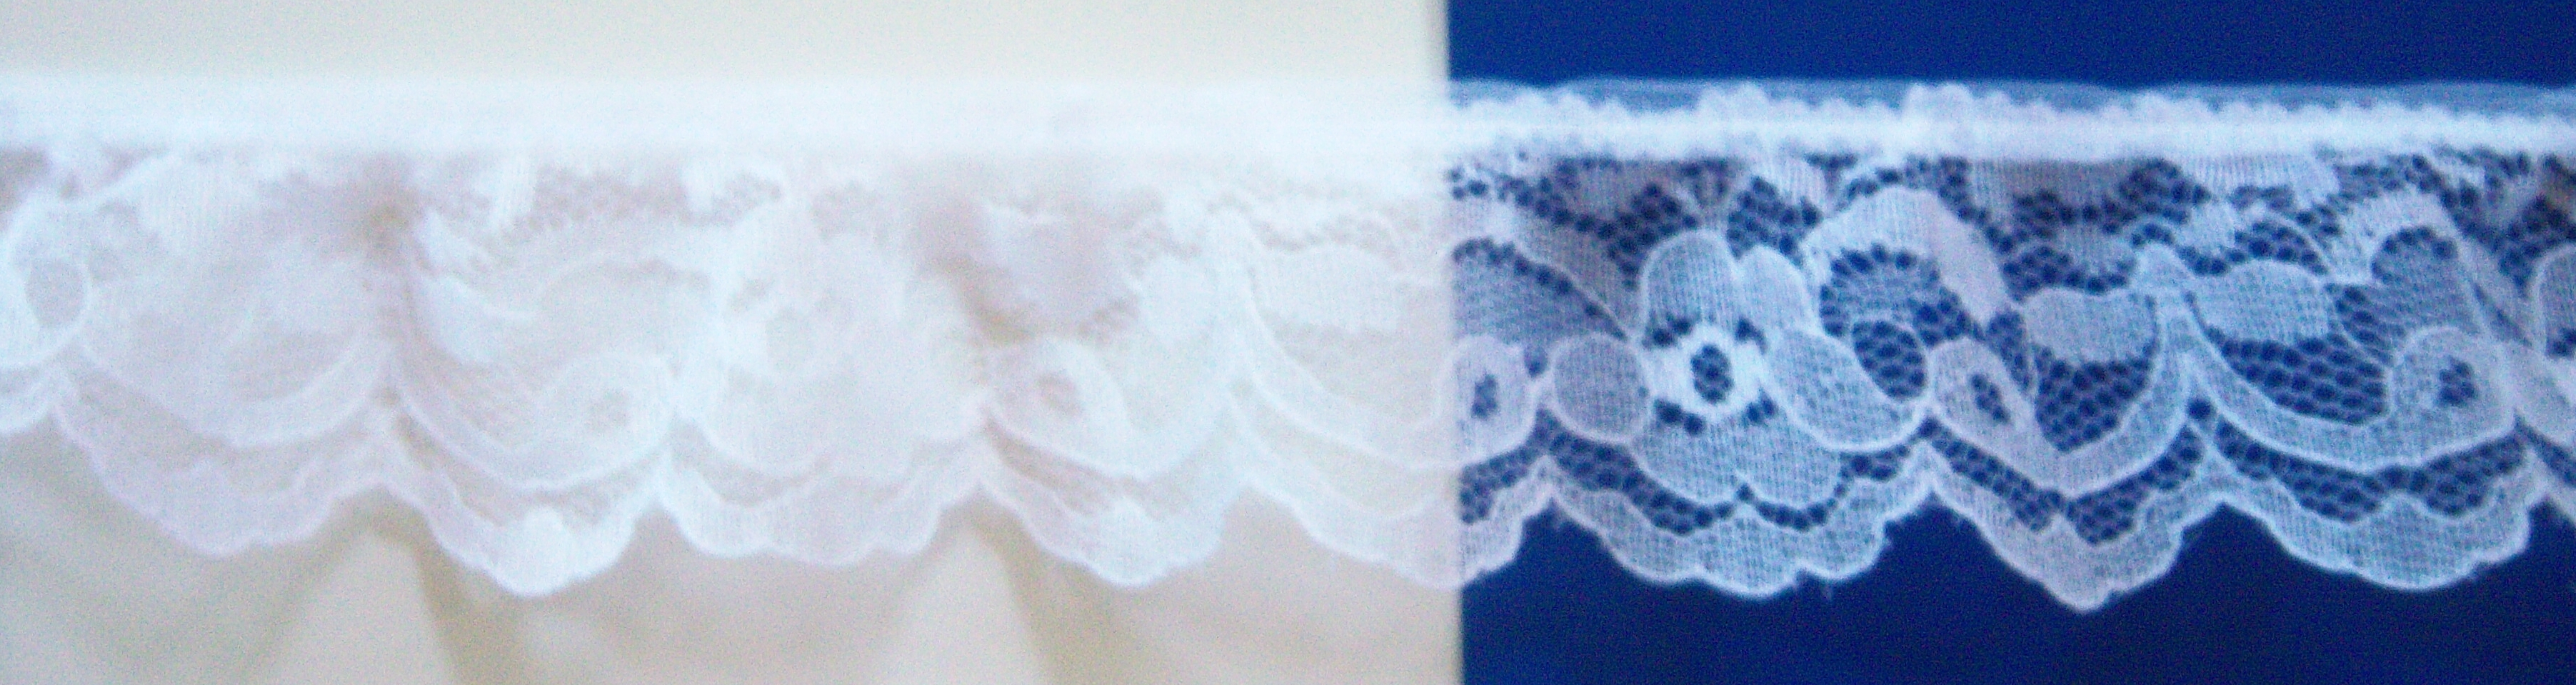 White Nylon 1 3/4" Ruffled Lace